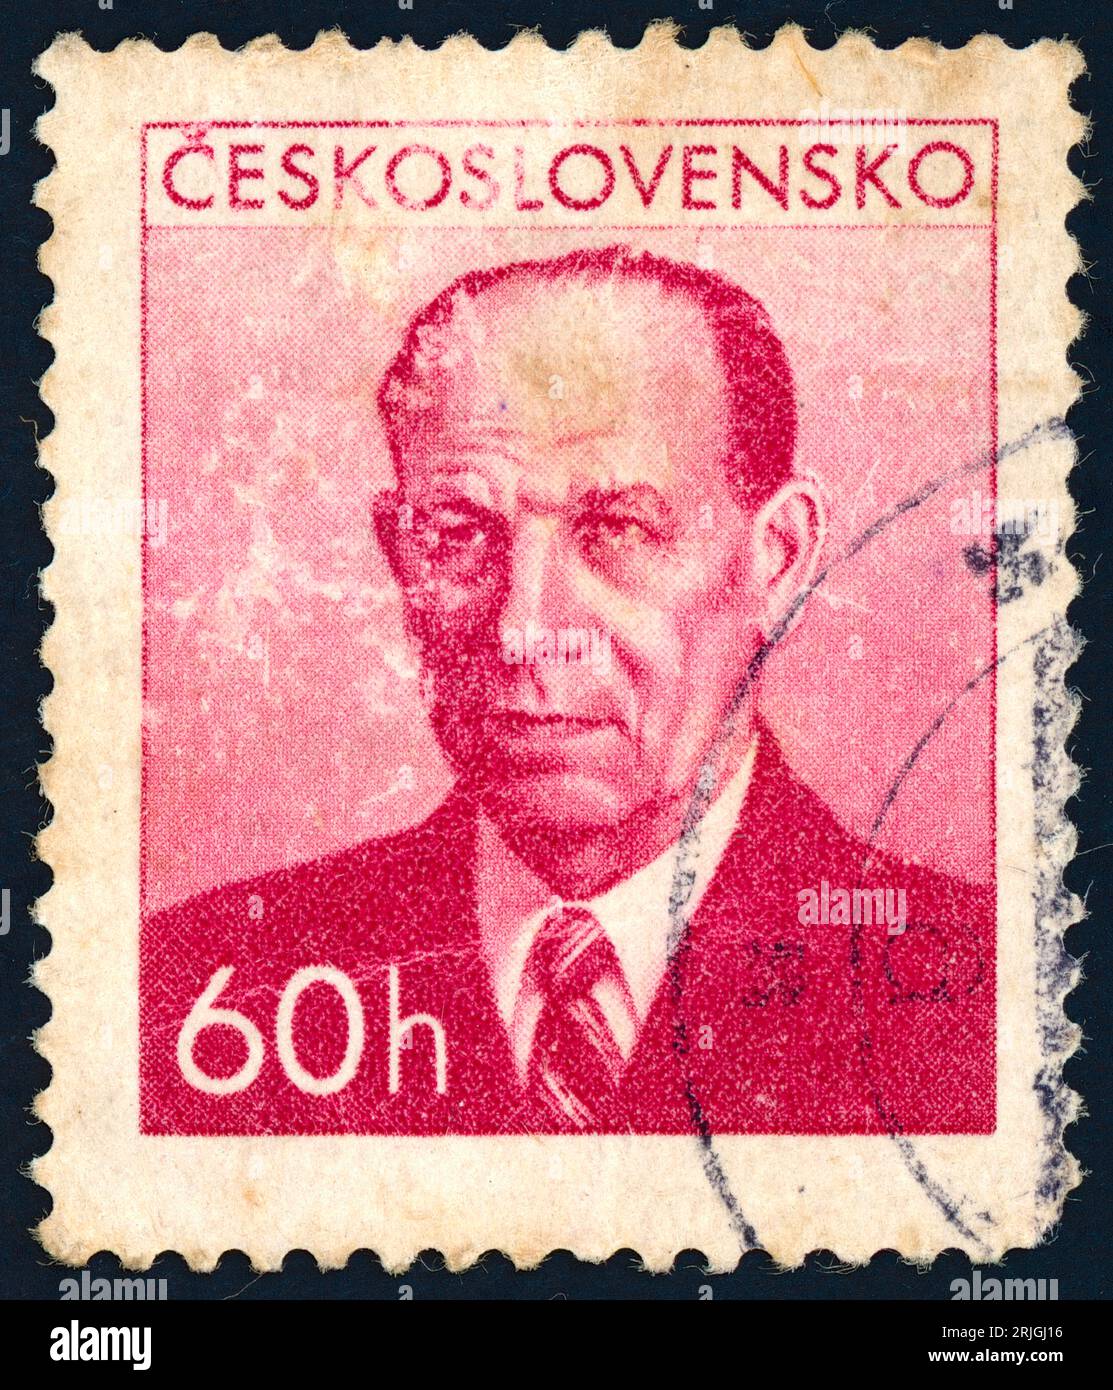 Antonín Zápotocký (1884 – 1957). Francobollo emesso in Cecoslovacchia nel 1953. Antonín Zápotocký è stato un politico e statista ceco che ha servito come primo ministro della Cecoslovacchia dal 1948 al 1953 e presidente della Cecoslovacchia dal 1953 al 1957. Foto Stock